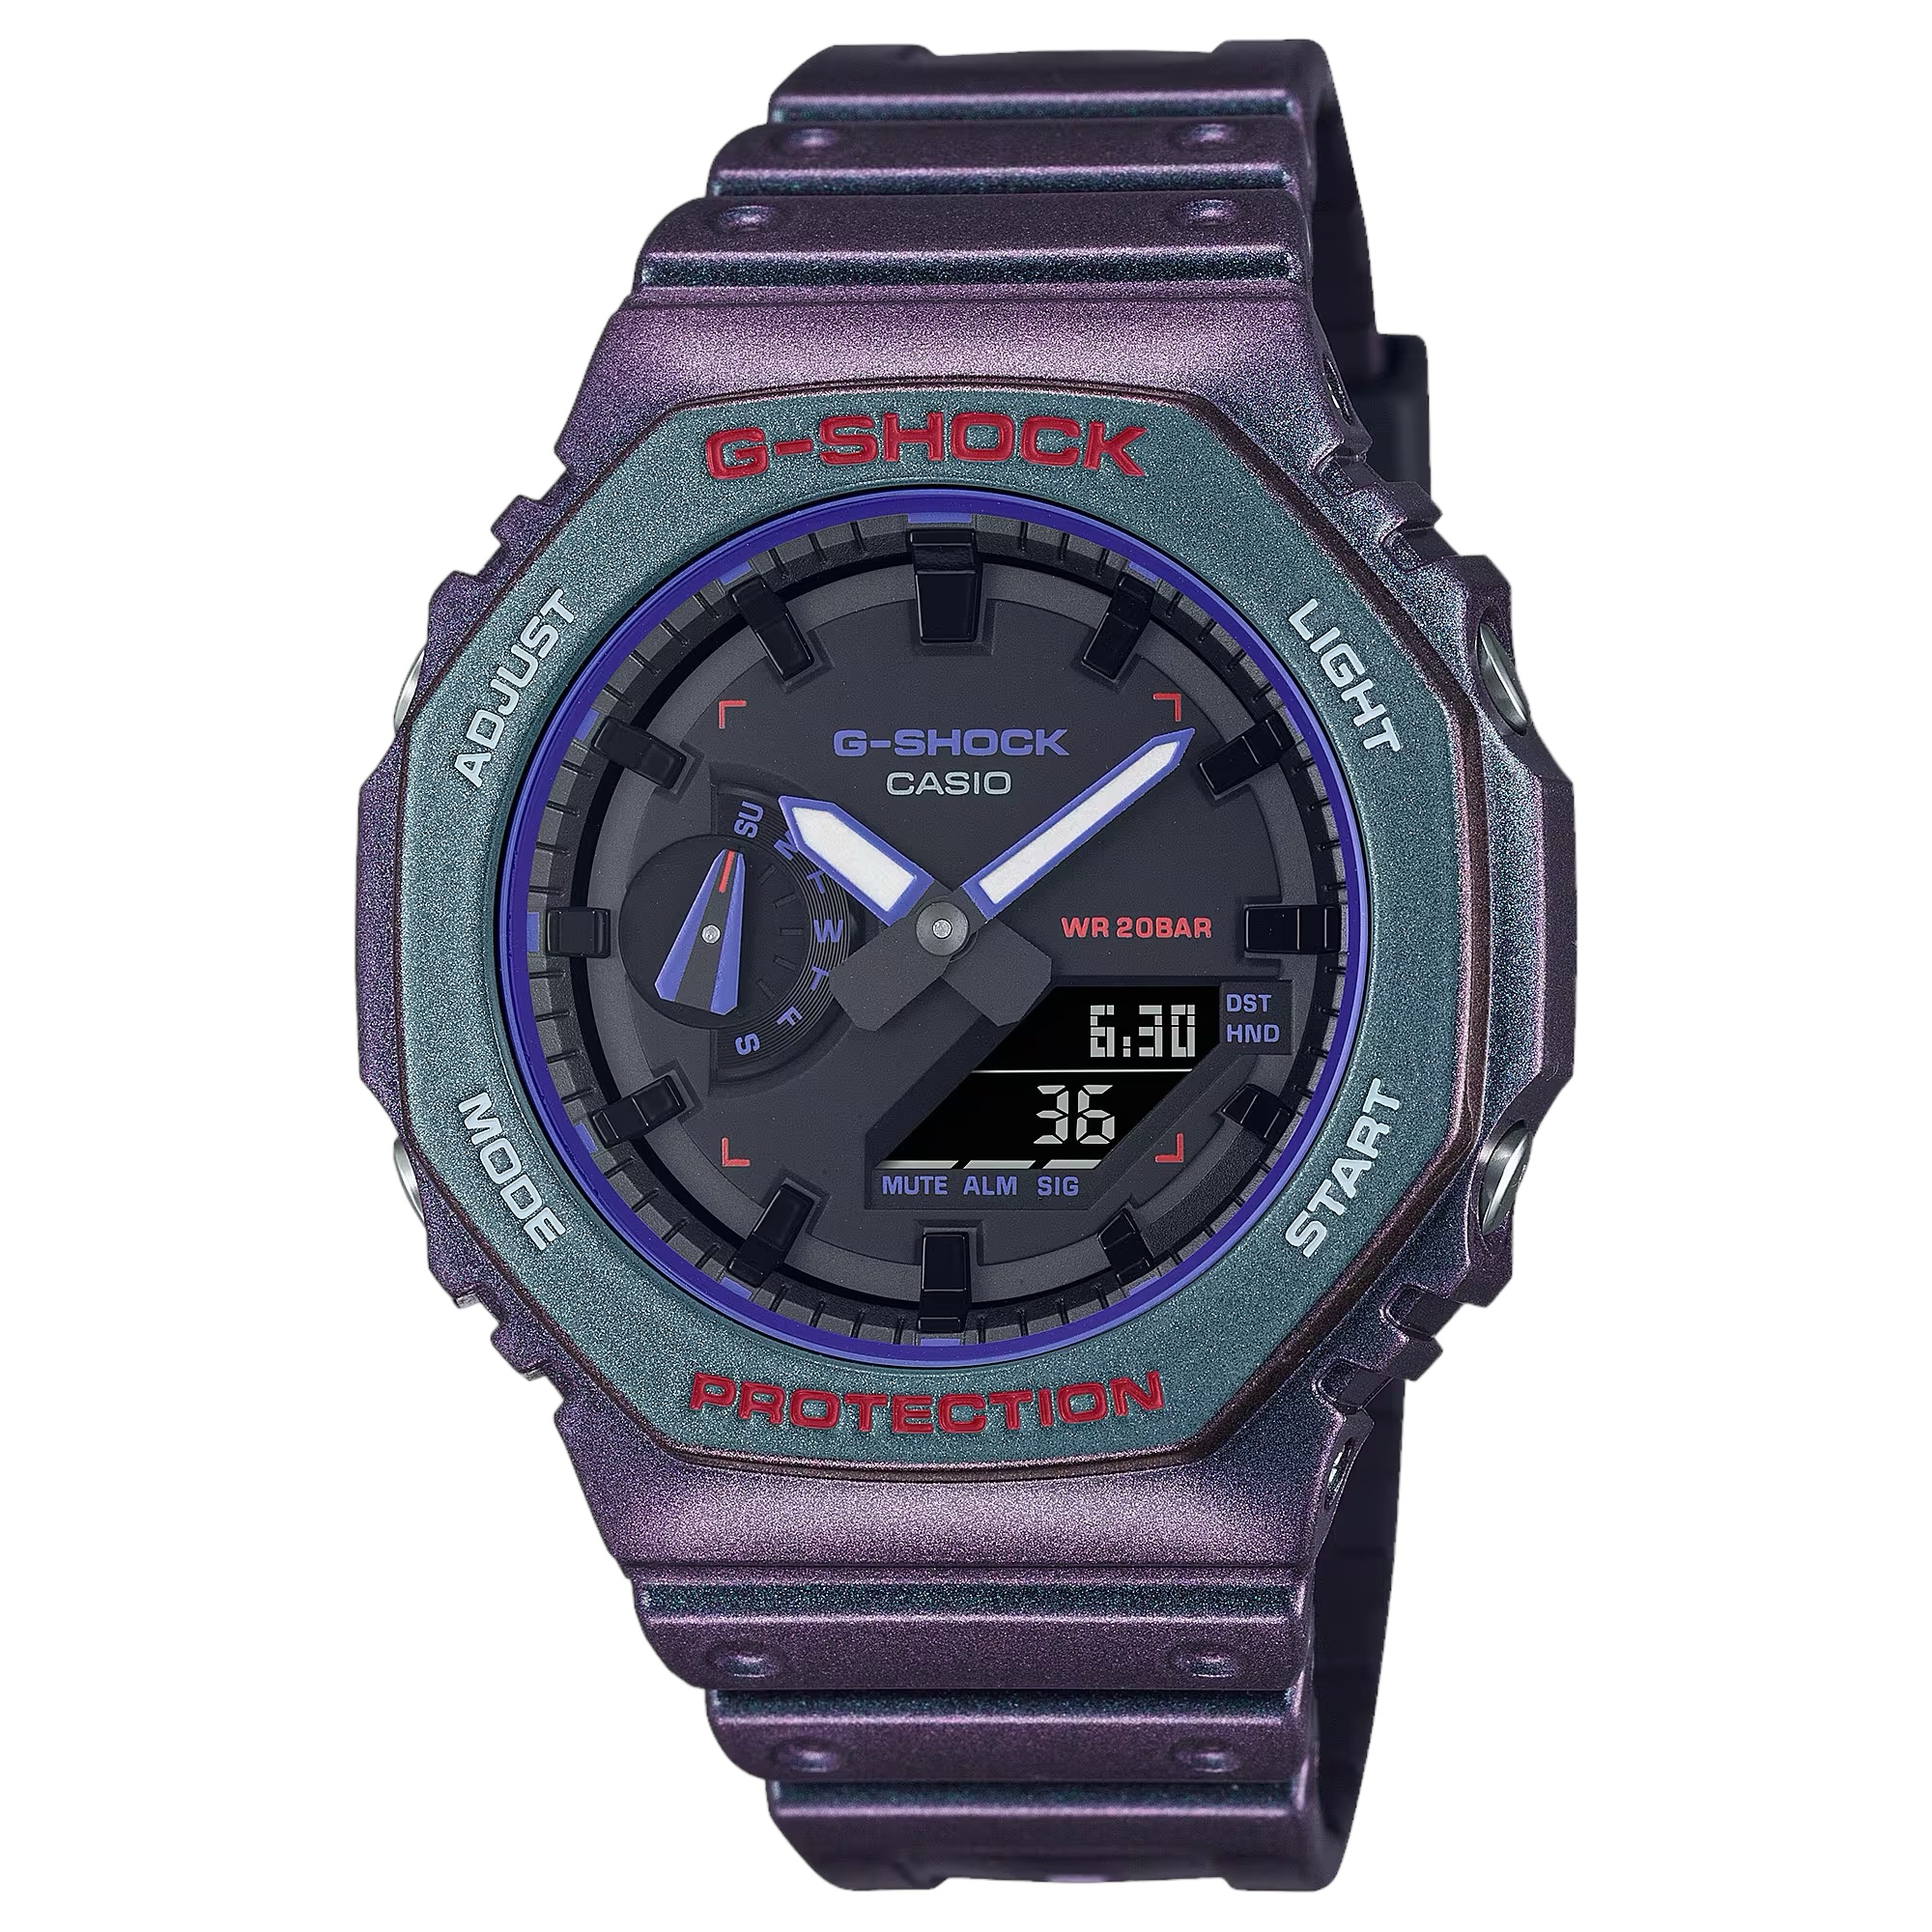 Reloj G-SHOCK Casio Dorado y Negro – Joyería Online Grau